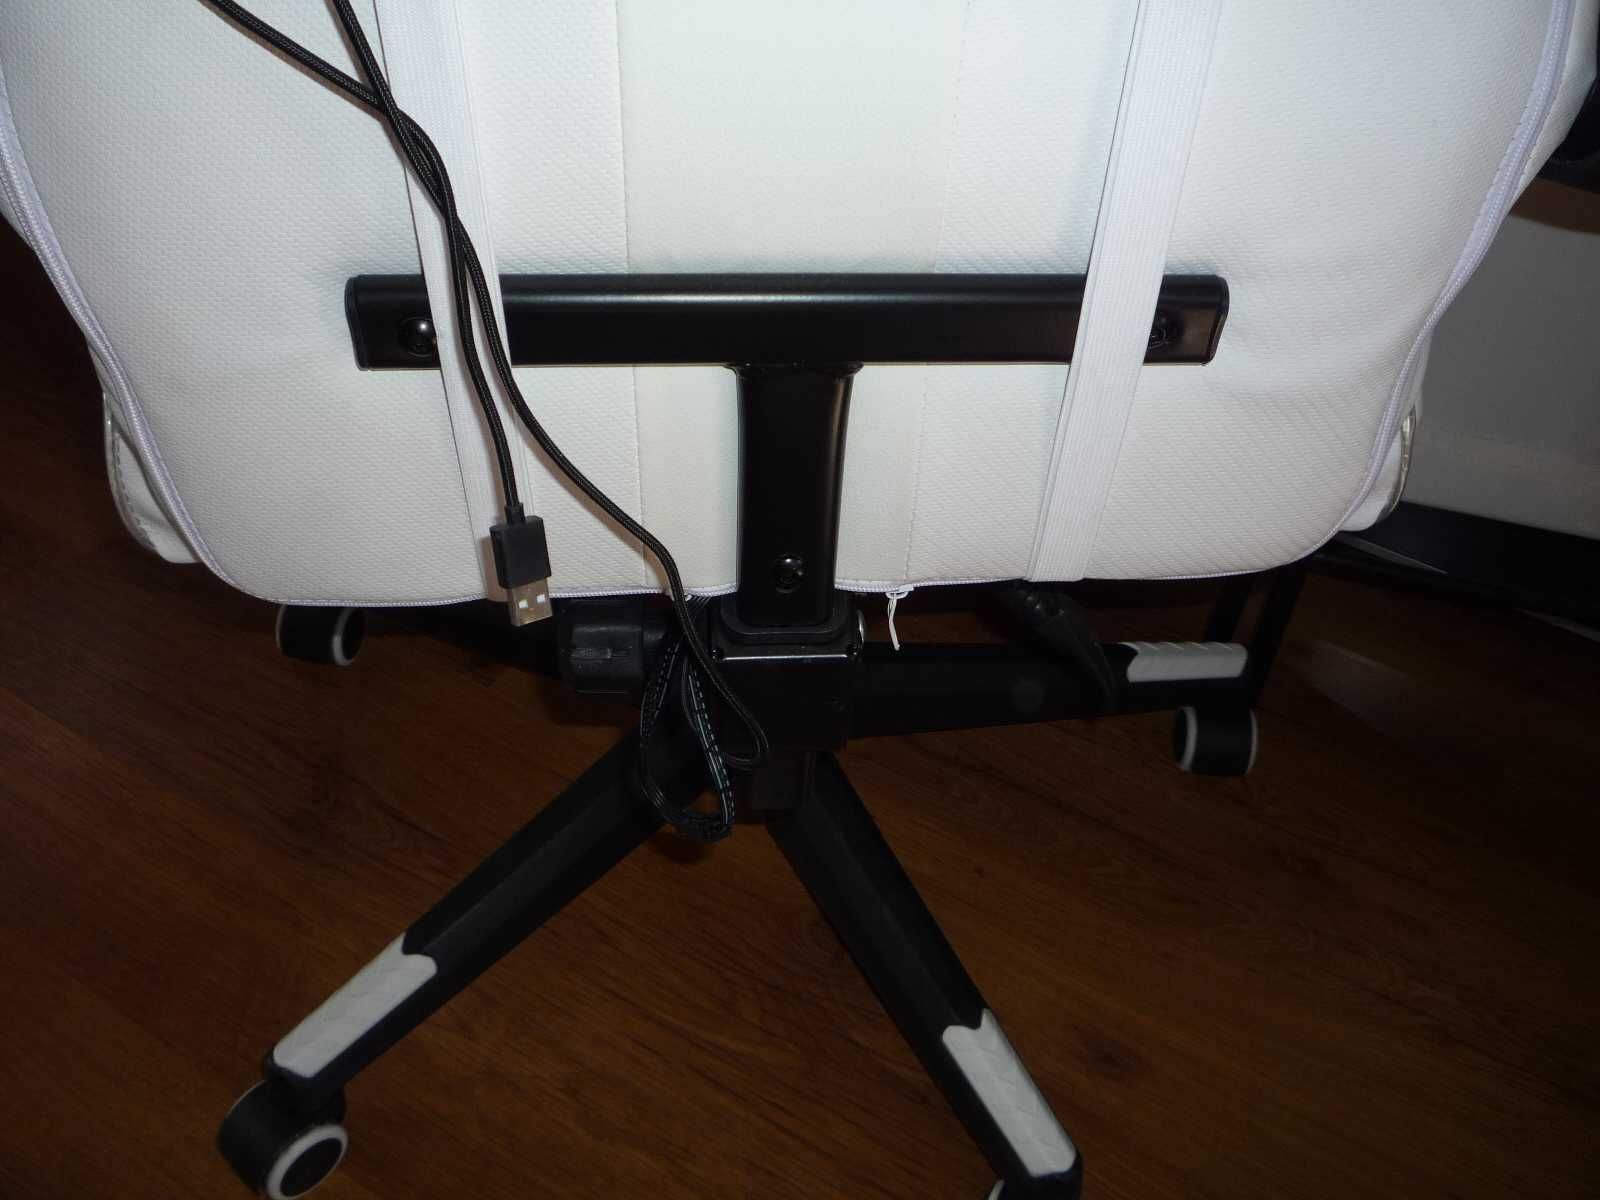 Fotel gamingowy HUZARO LED biały USB podnóżek